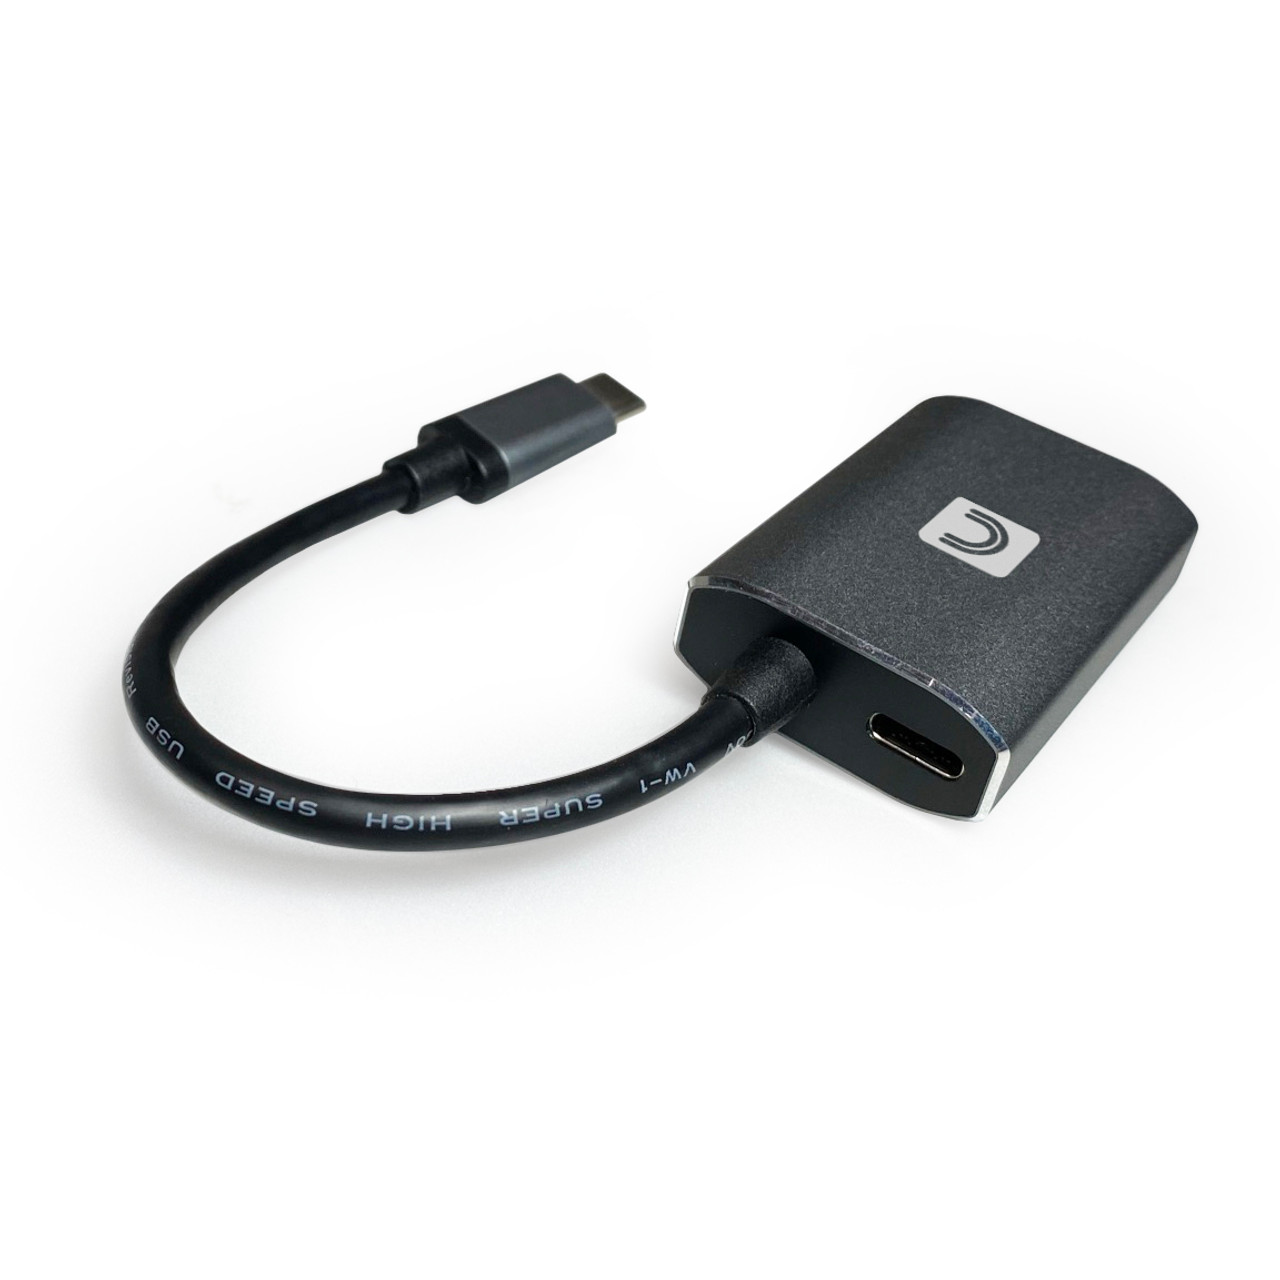 Adaptador USB-C a USB-A Convertidor - Cables USB-C